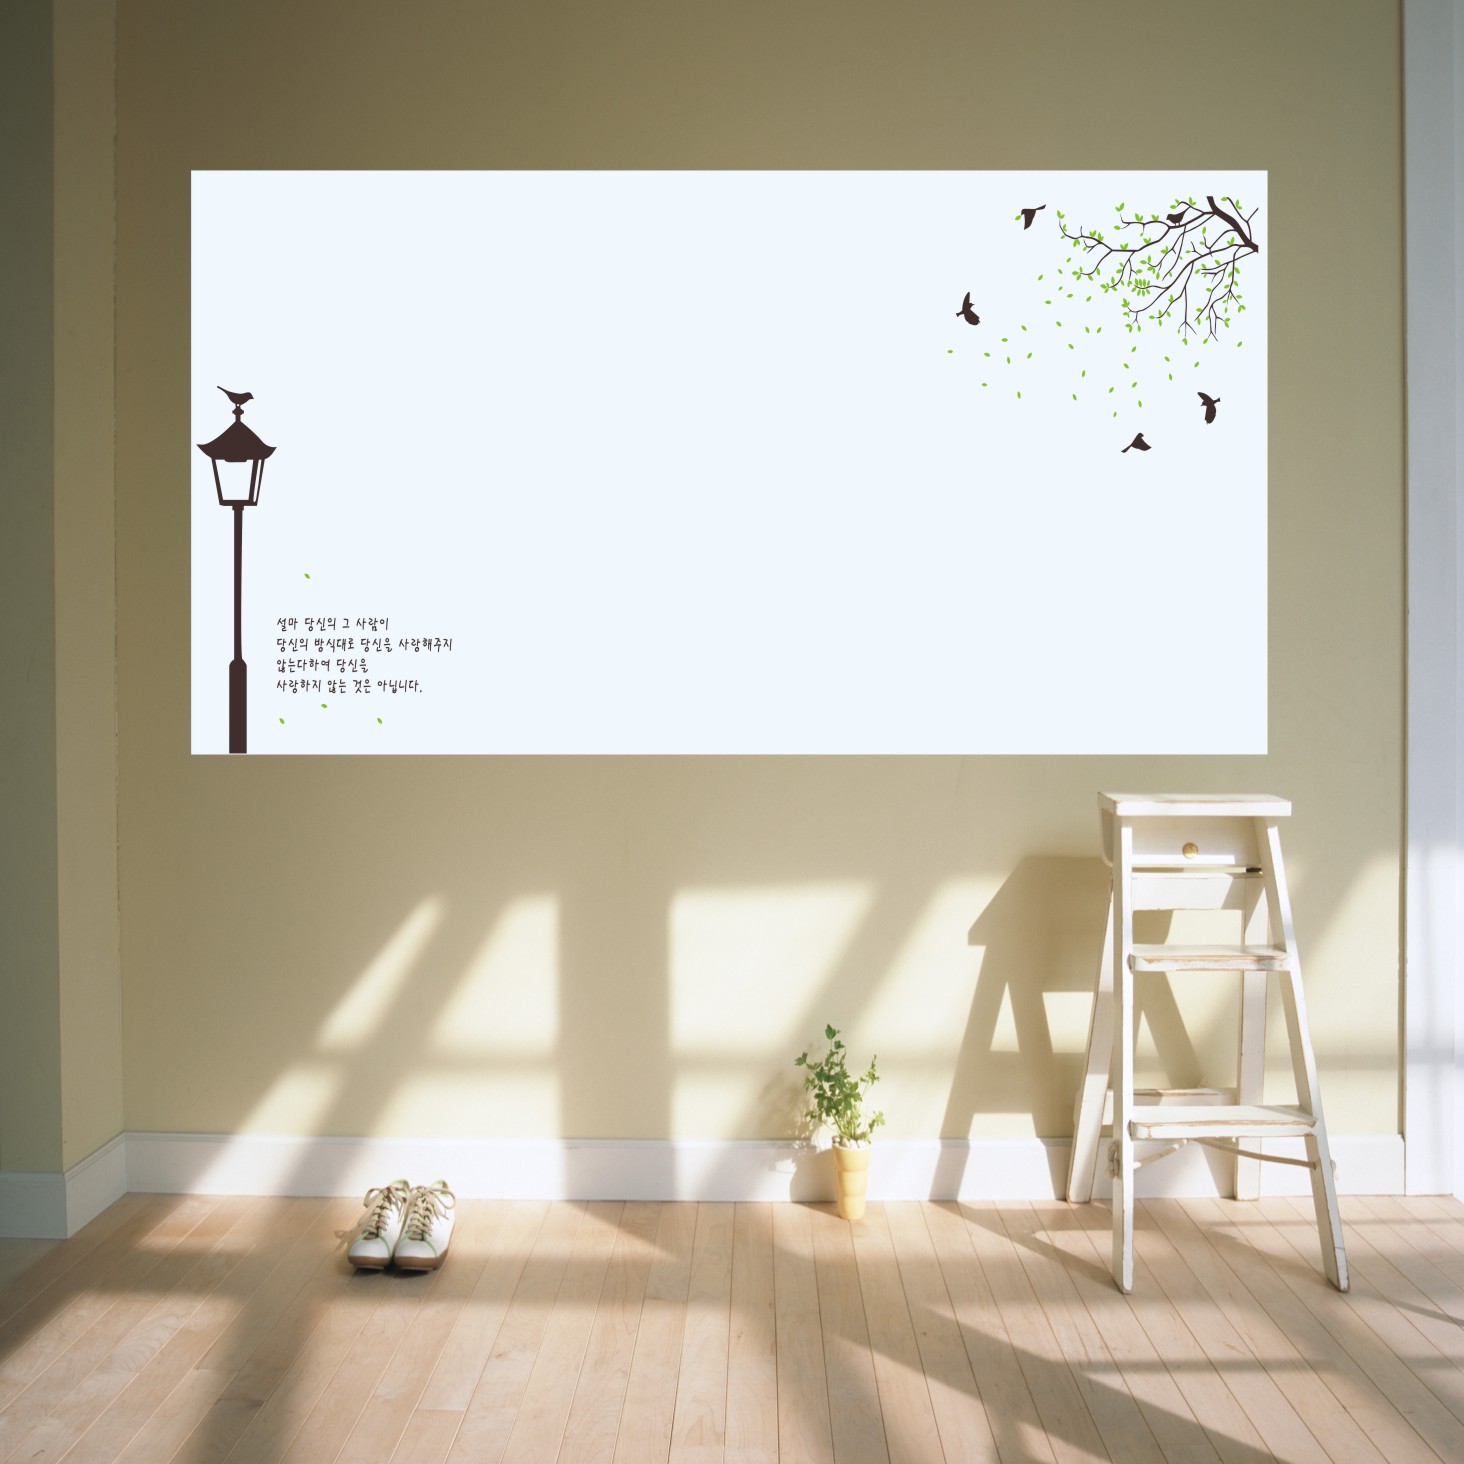 照片墙 软白板 涂鸦墙 尺寸可定,可吸磁铁 可做